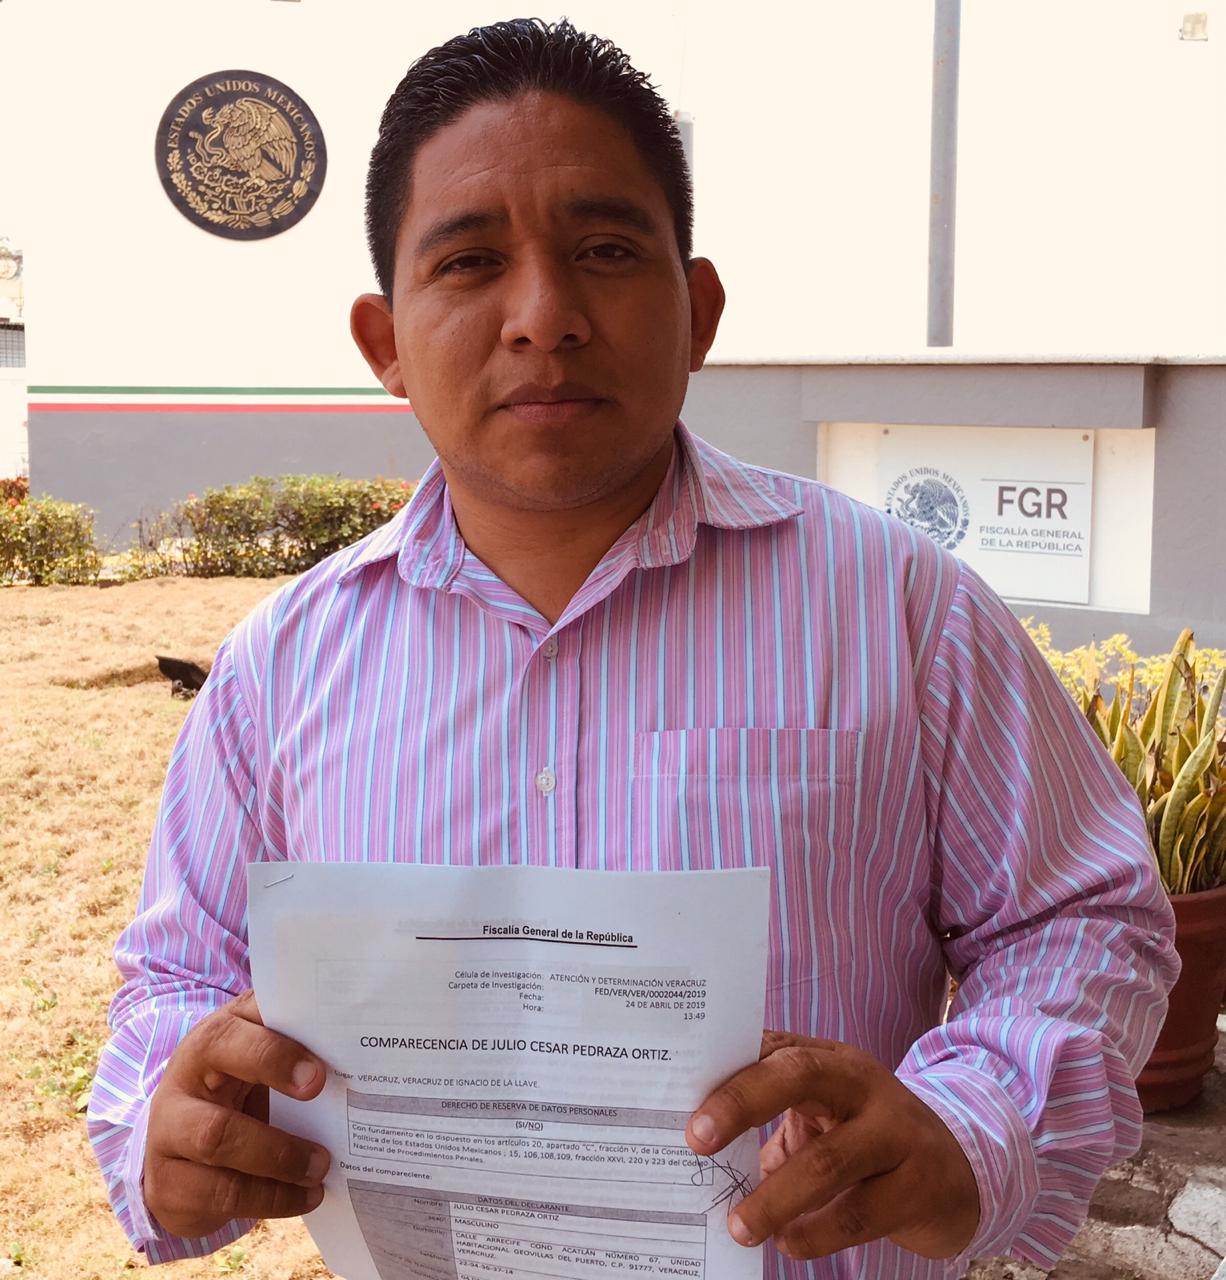 Declara locutor Julio César Pedraza ante FGR por amenazas de muerte ante críticas a gobierno estatal (Veracruz)